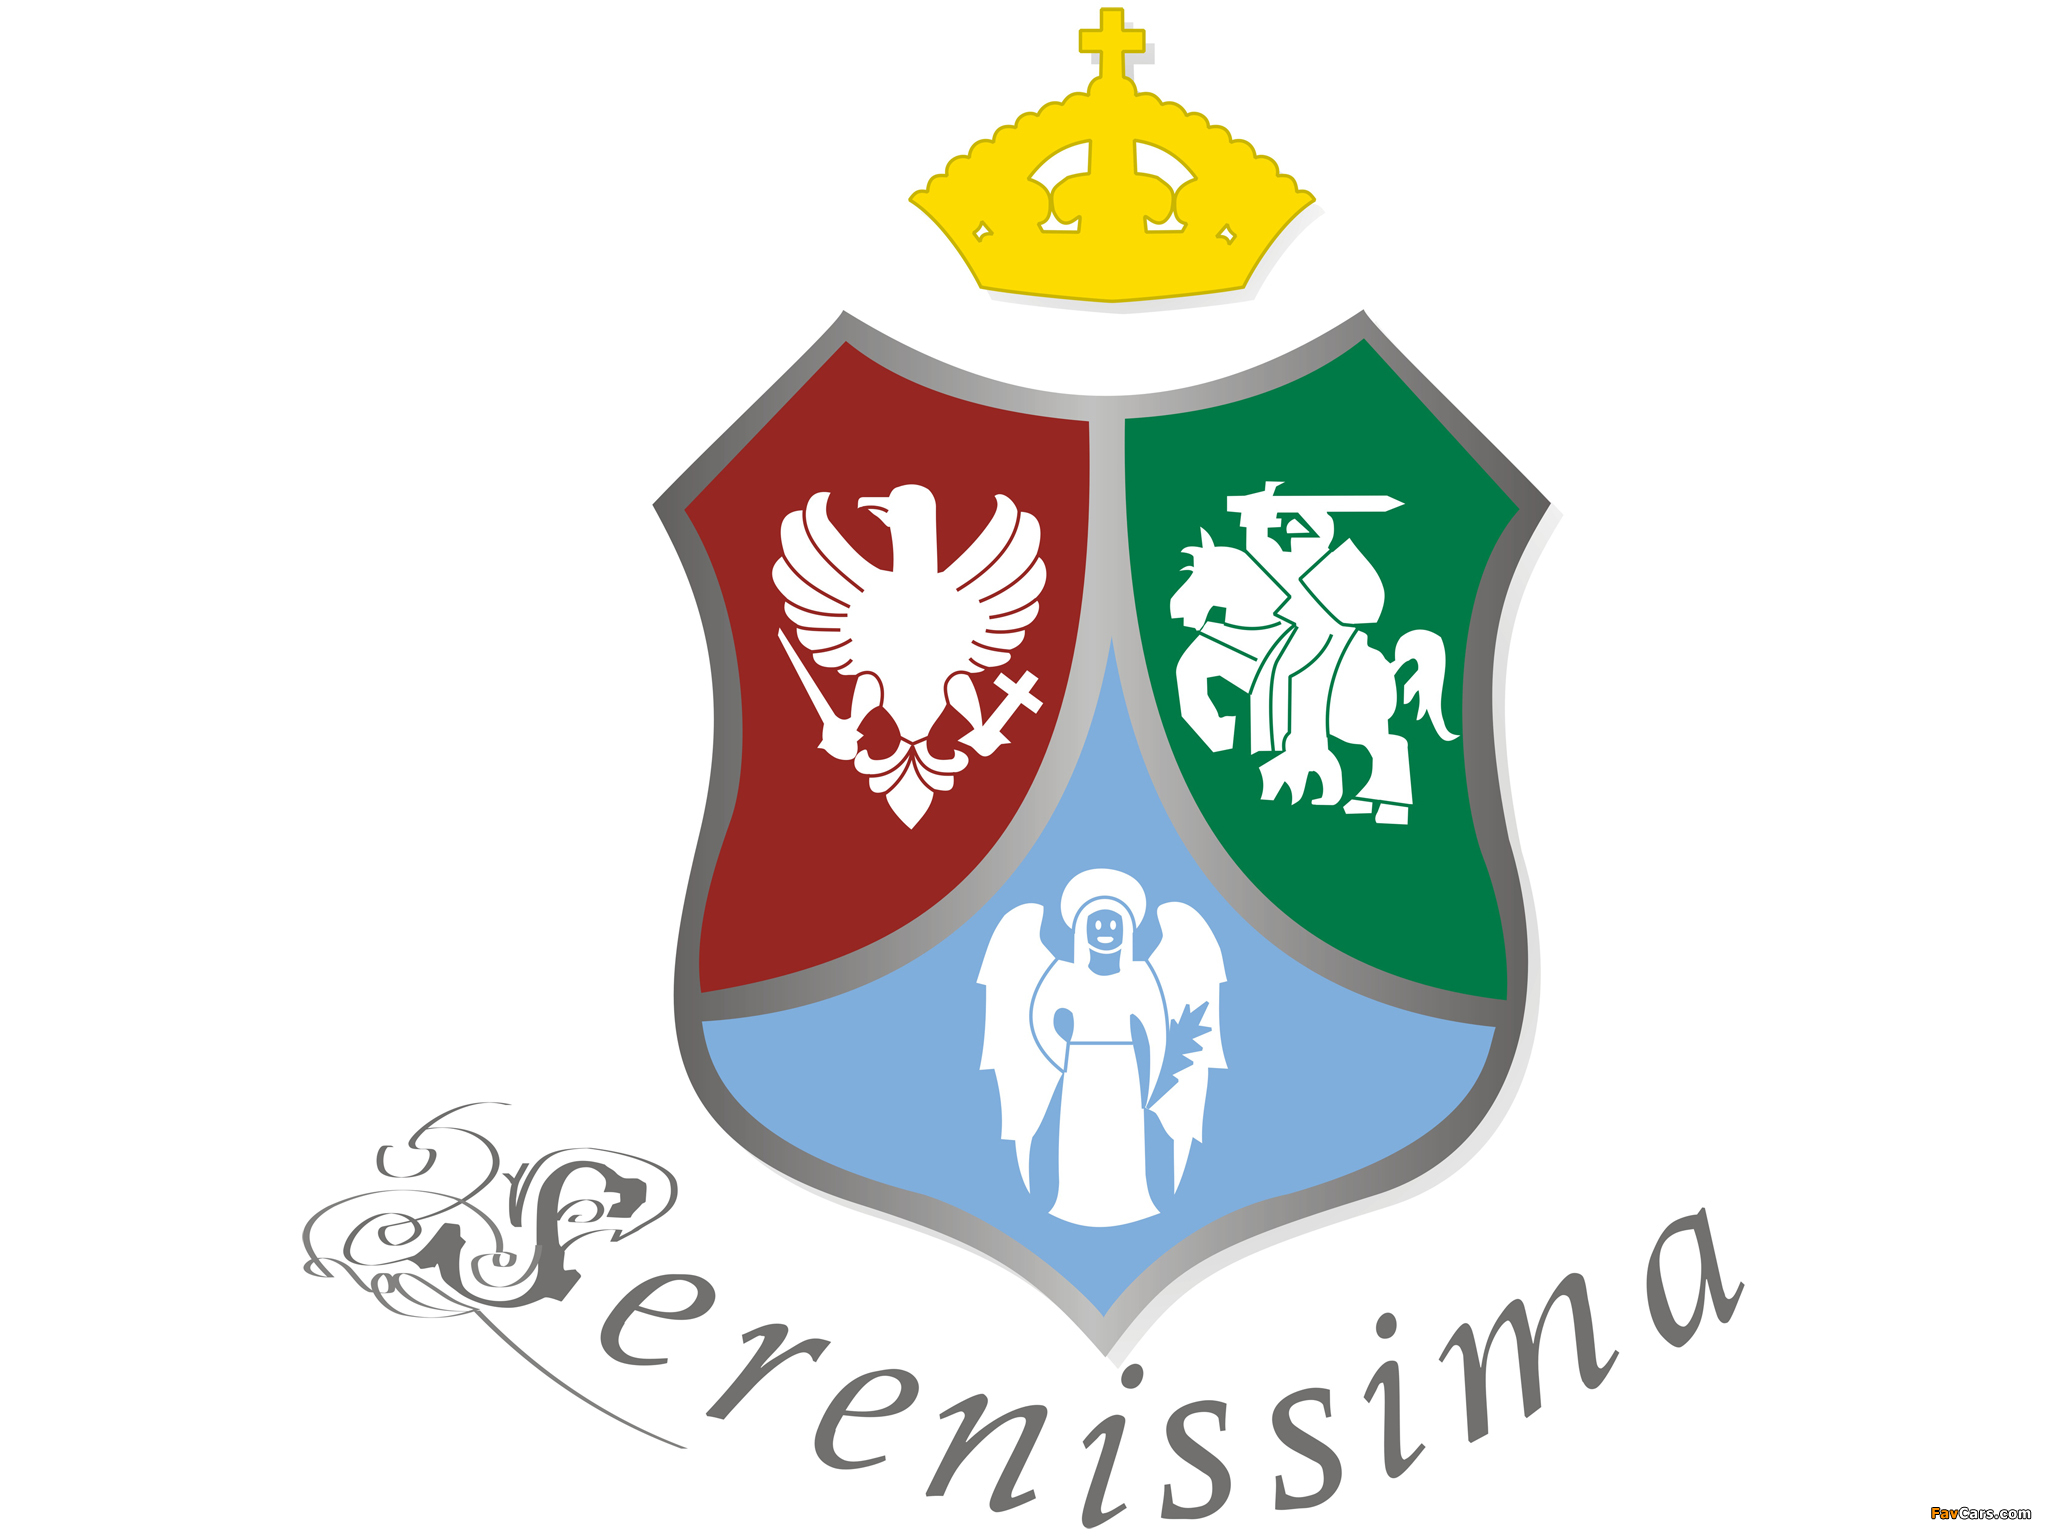 Serenissima images (2048 x 1536)